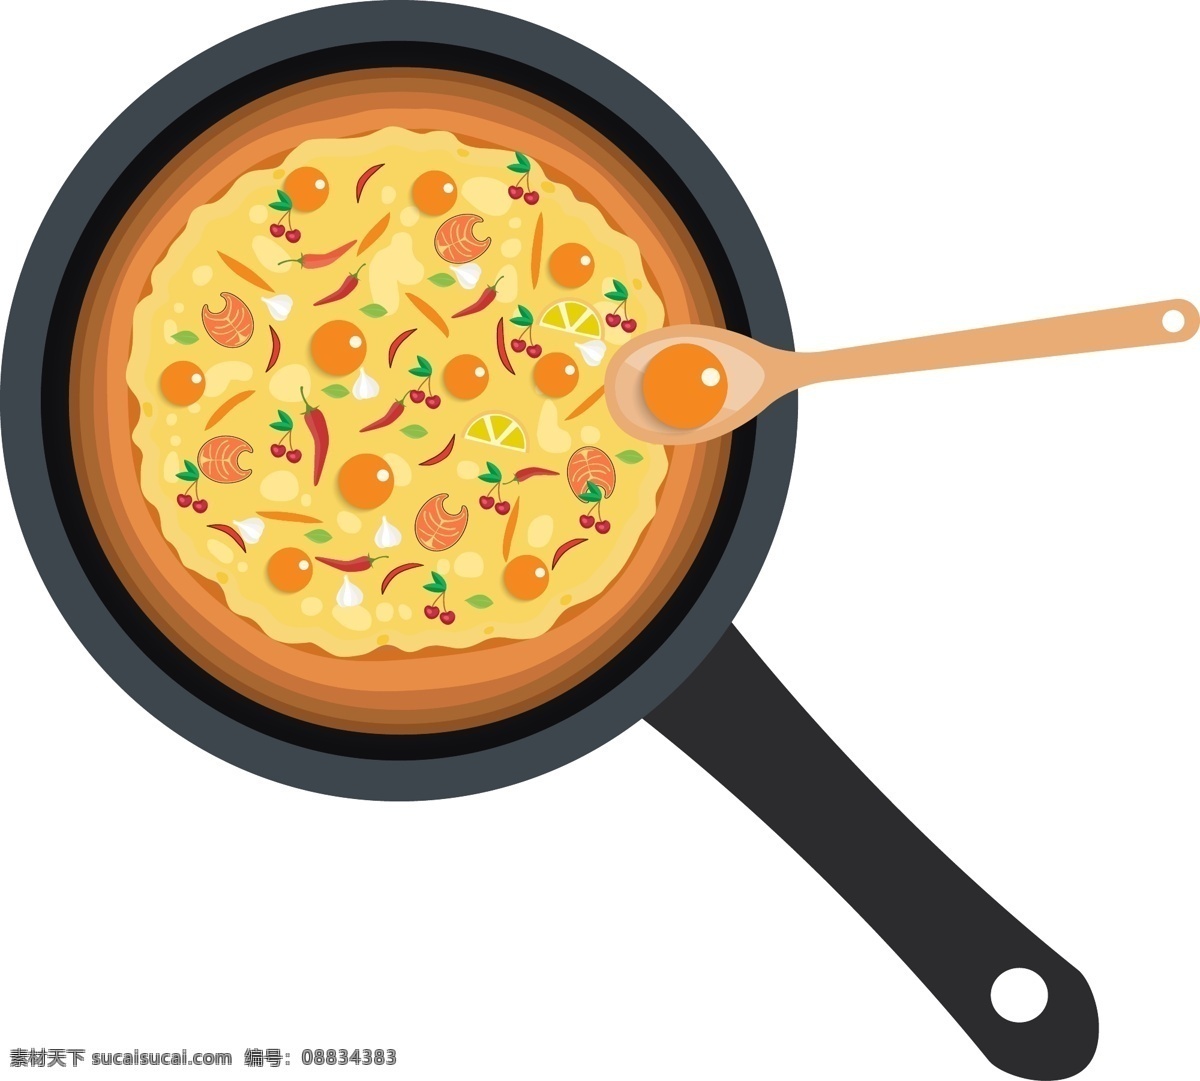 披萨 食物 原创 卡通 可爱 矢量 源文件 编辑